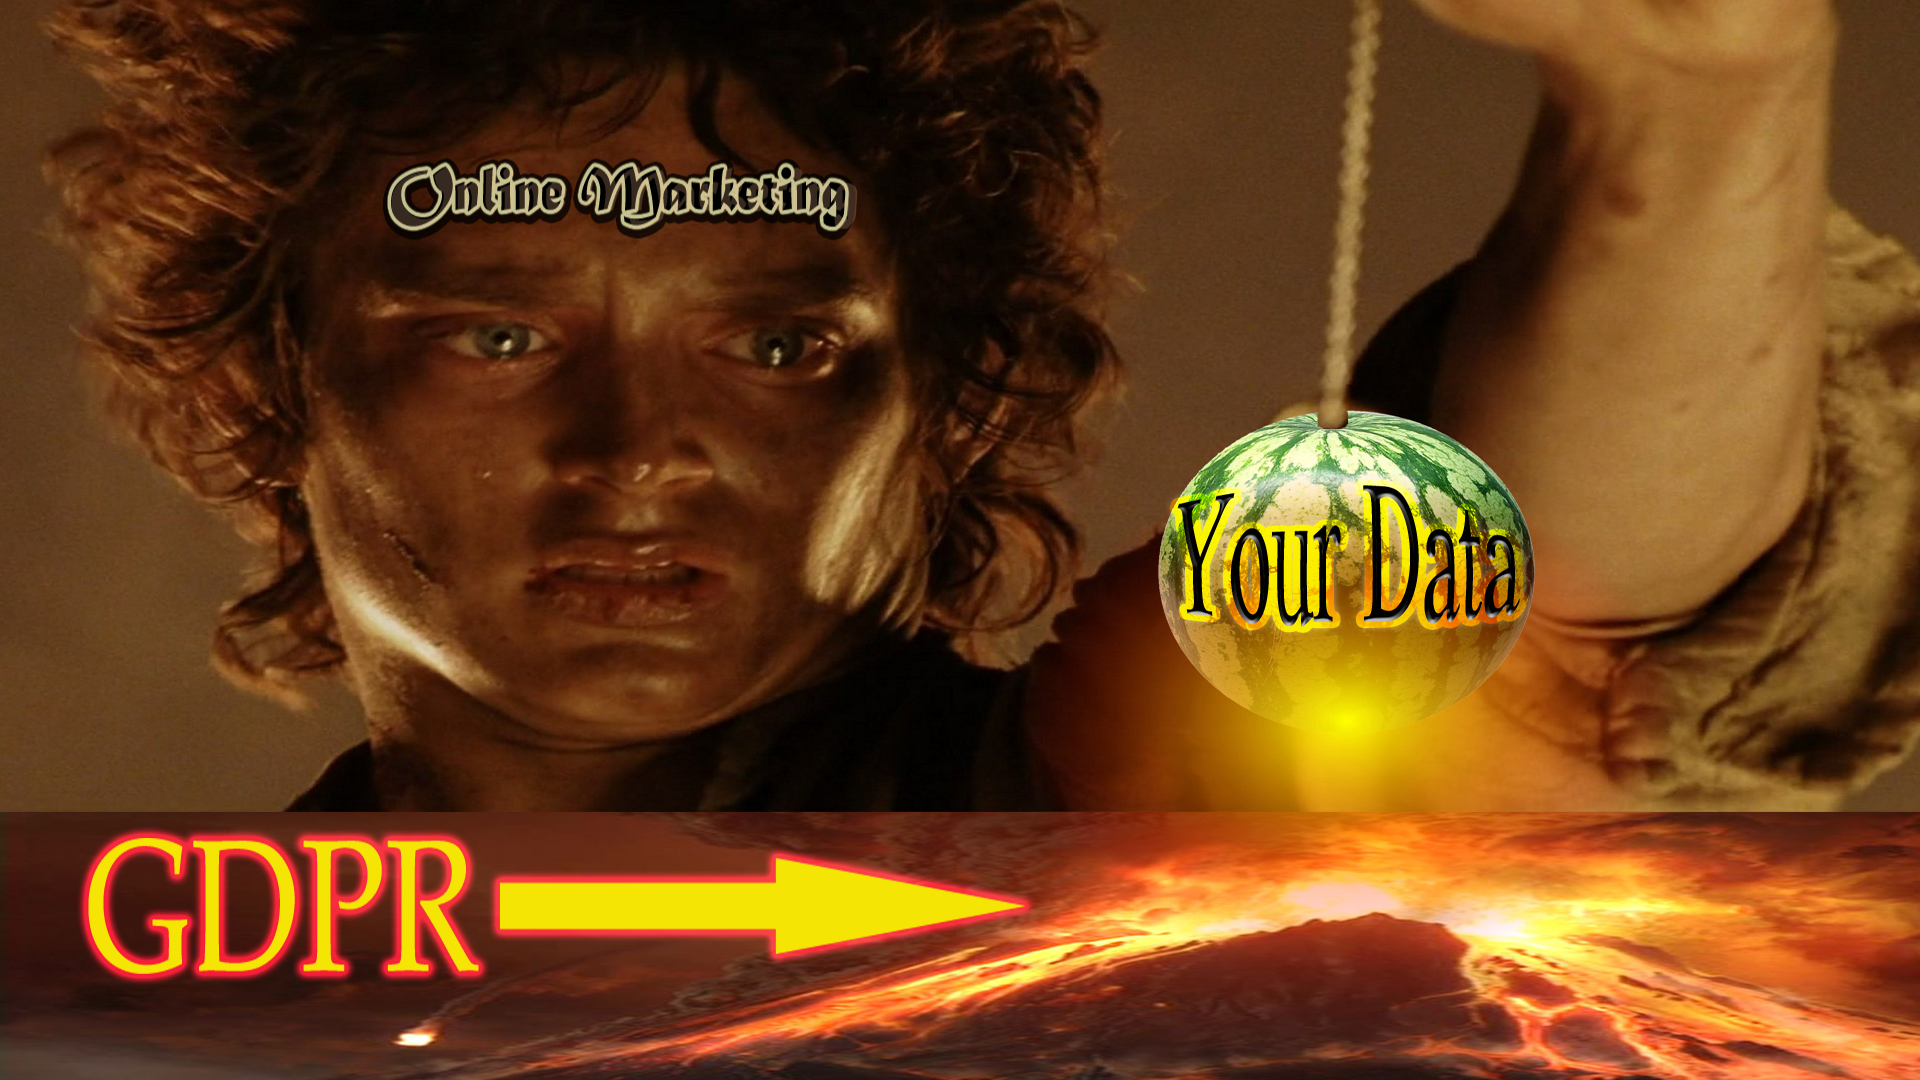 gdpr into the fire Frodo